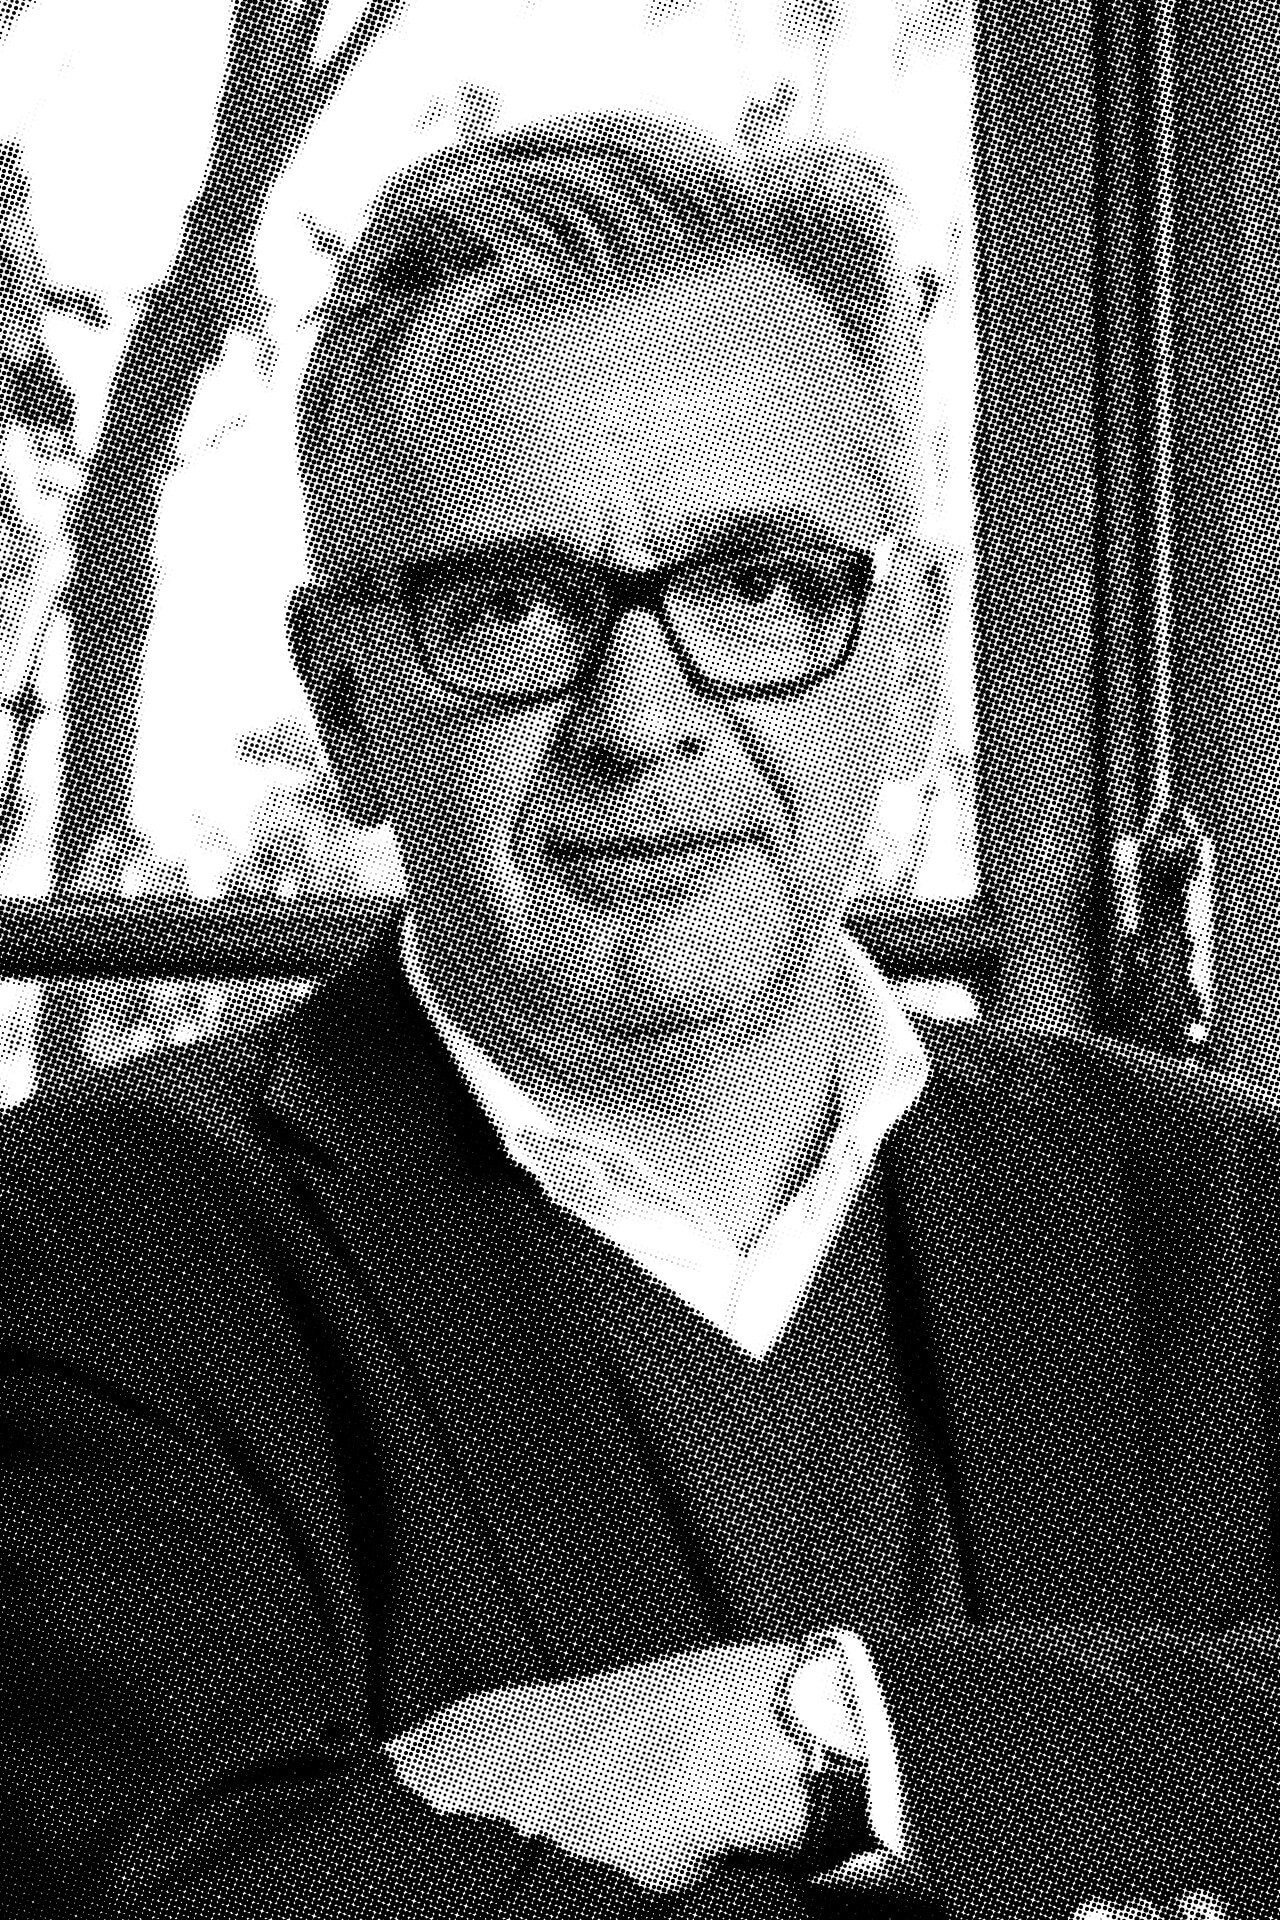 Prof. Uwe Schröder